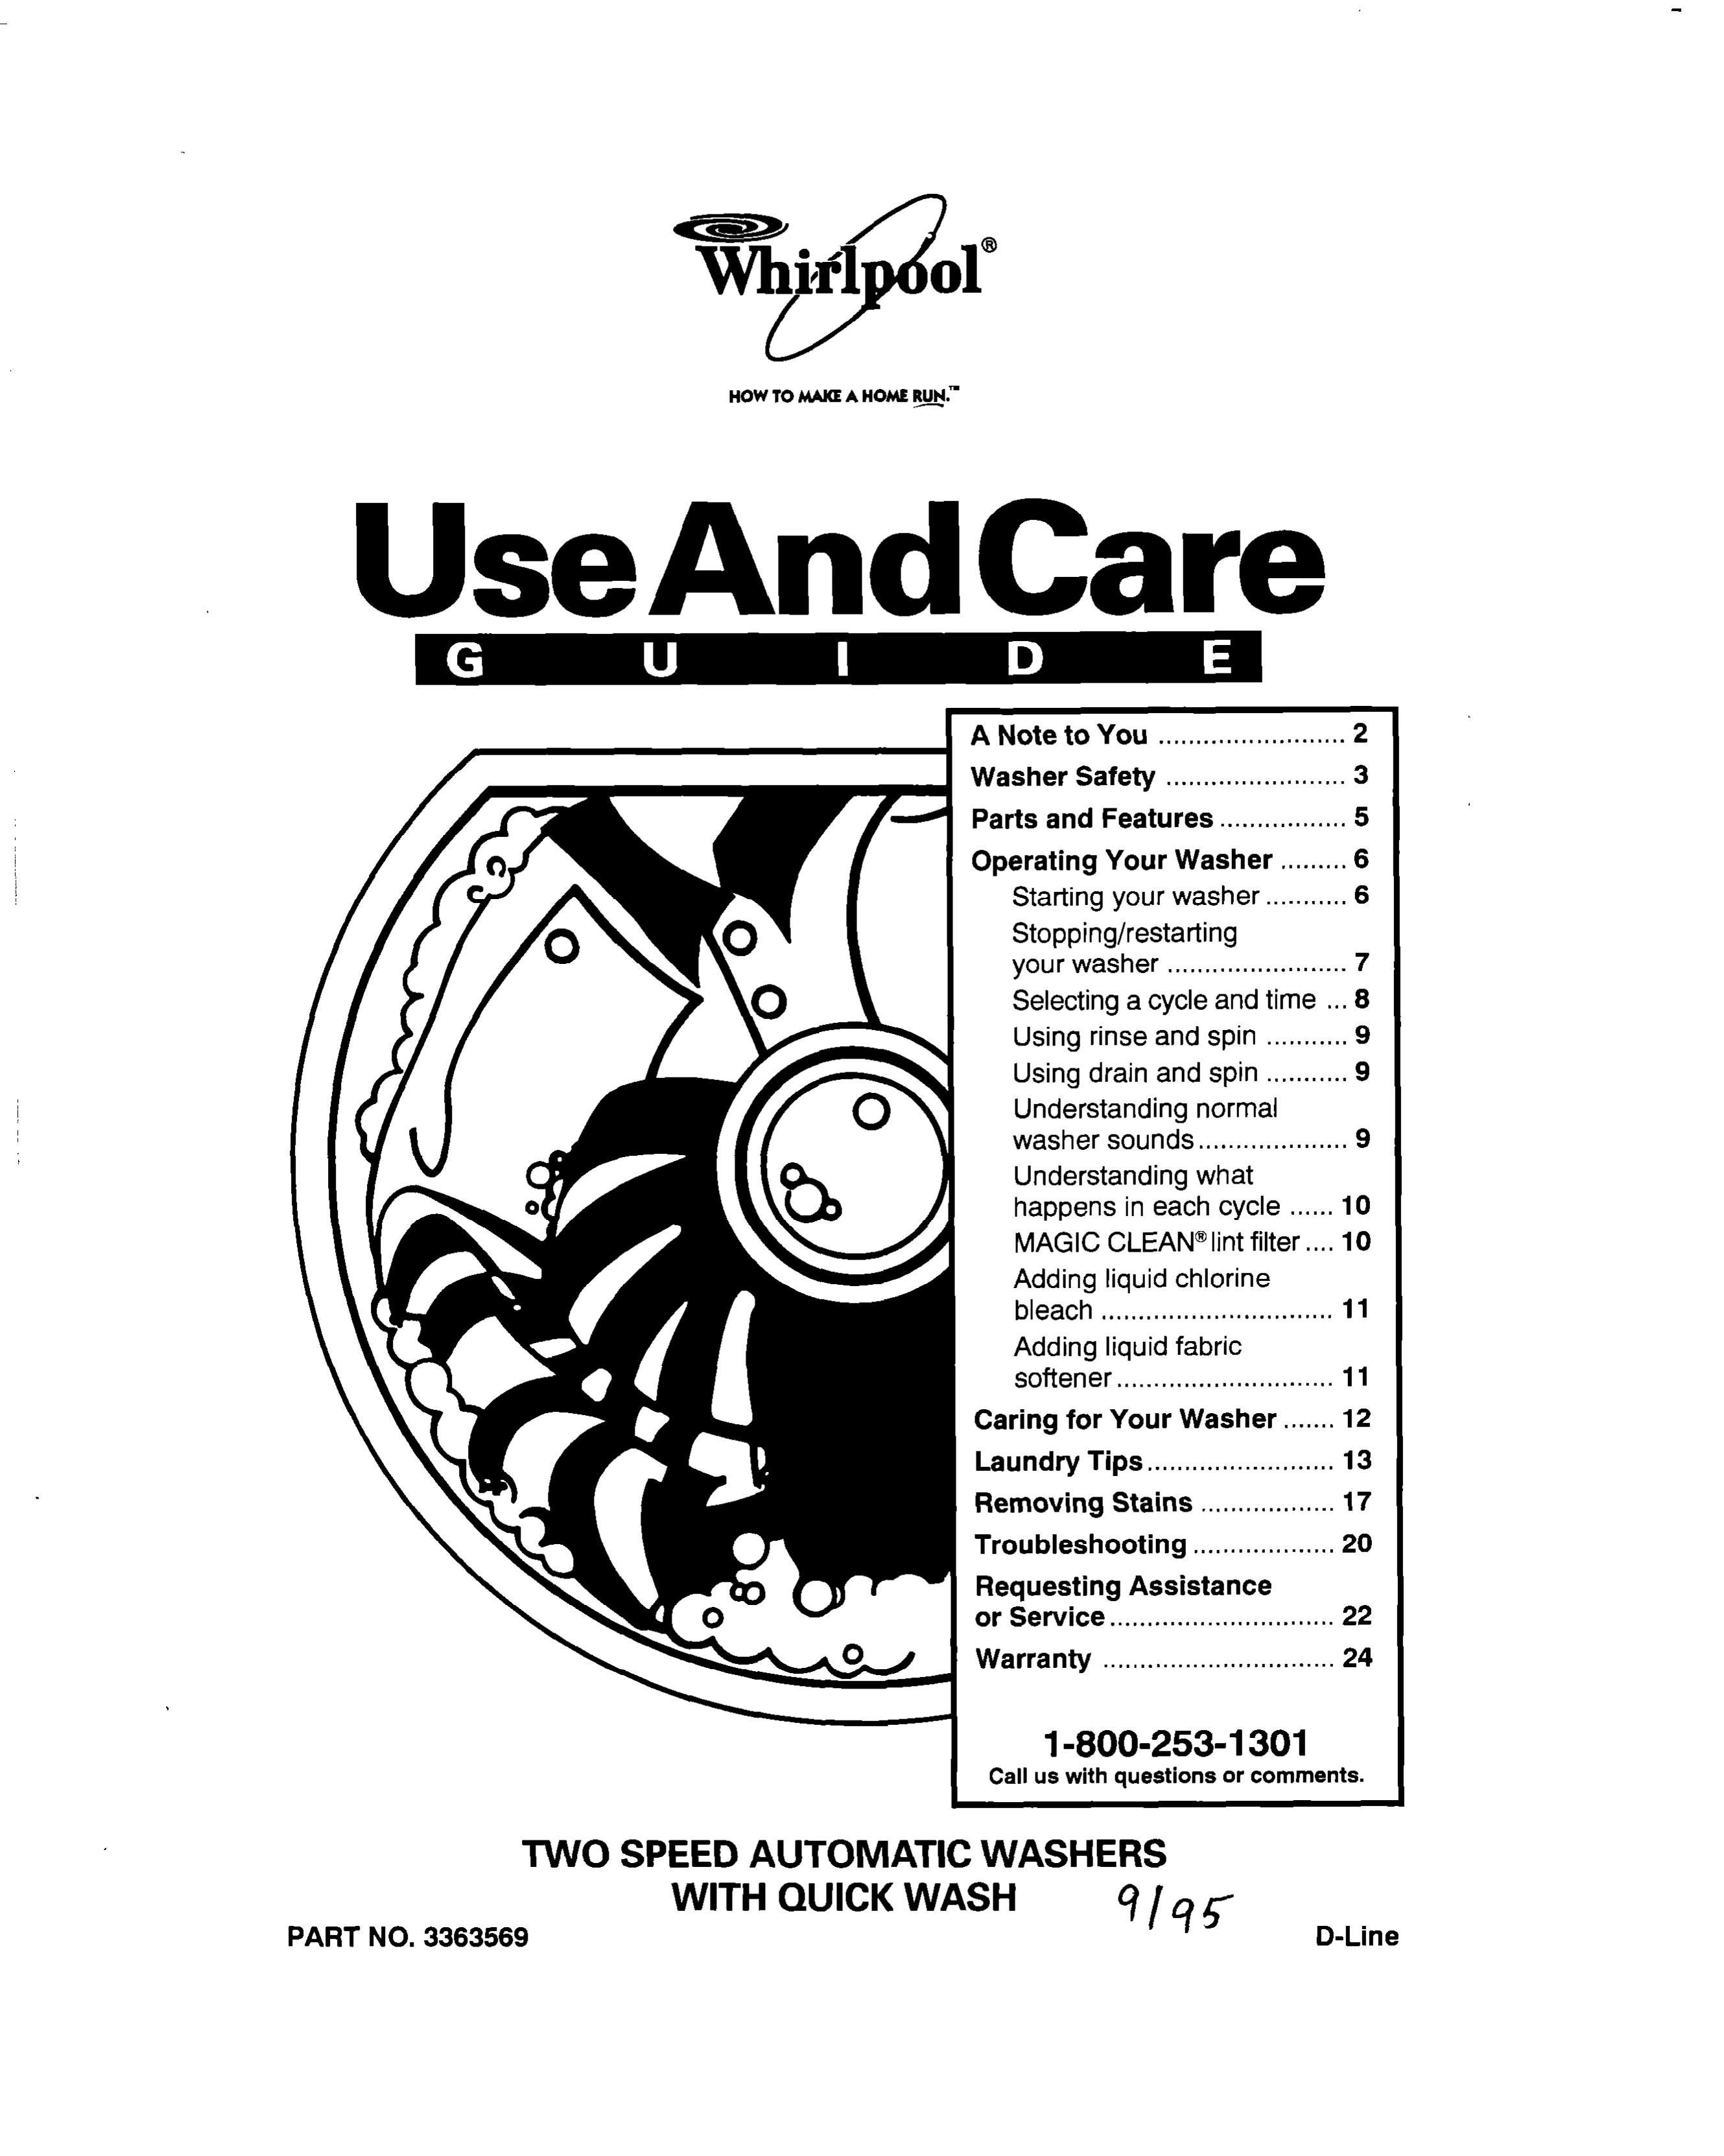 Whirlpool 3363569 Washer User Manual